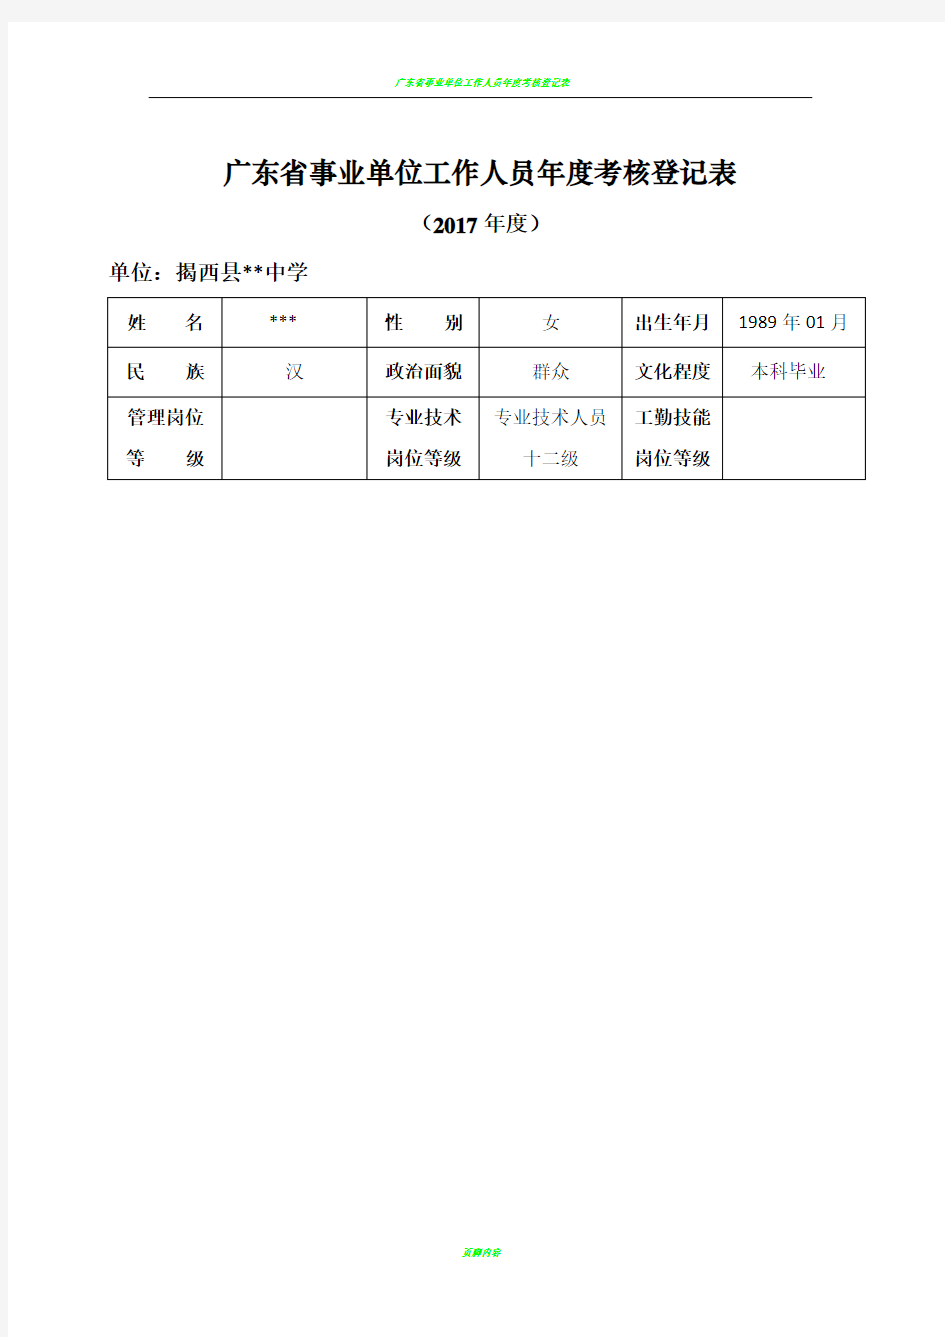 广东省事业单位工作人员年度考核登记表